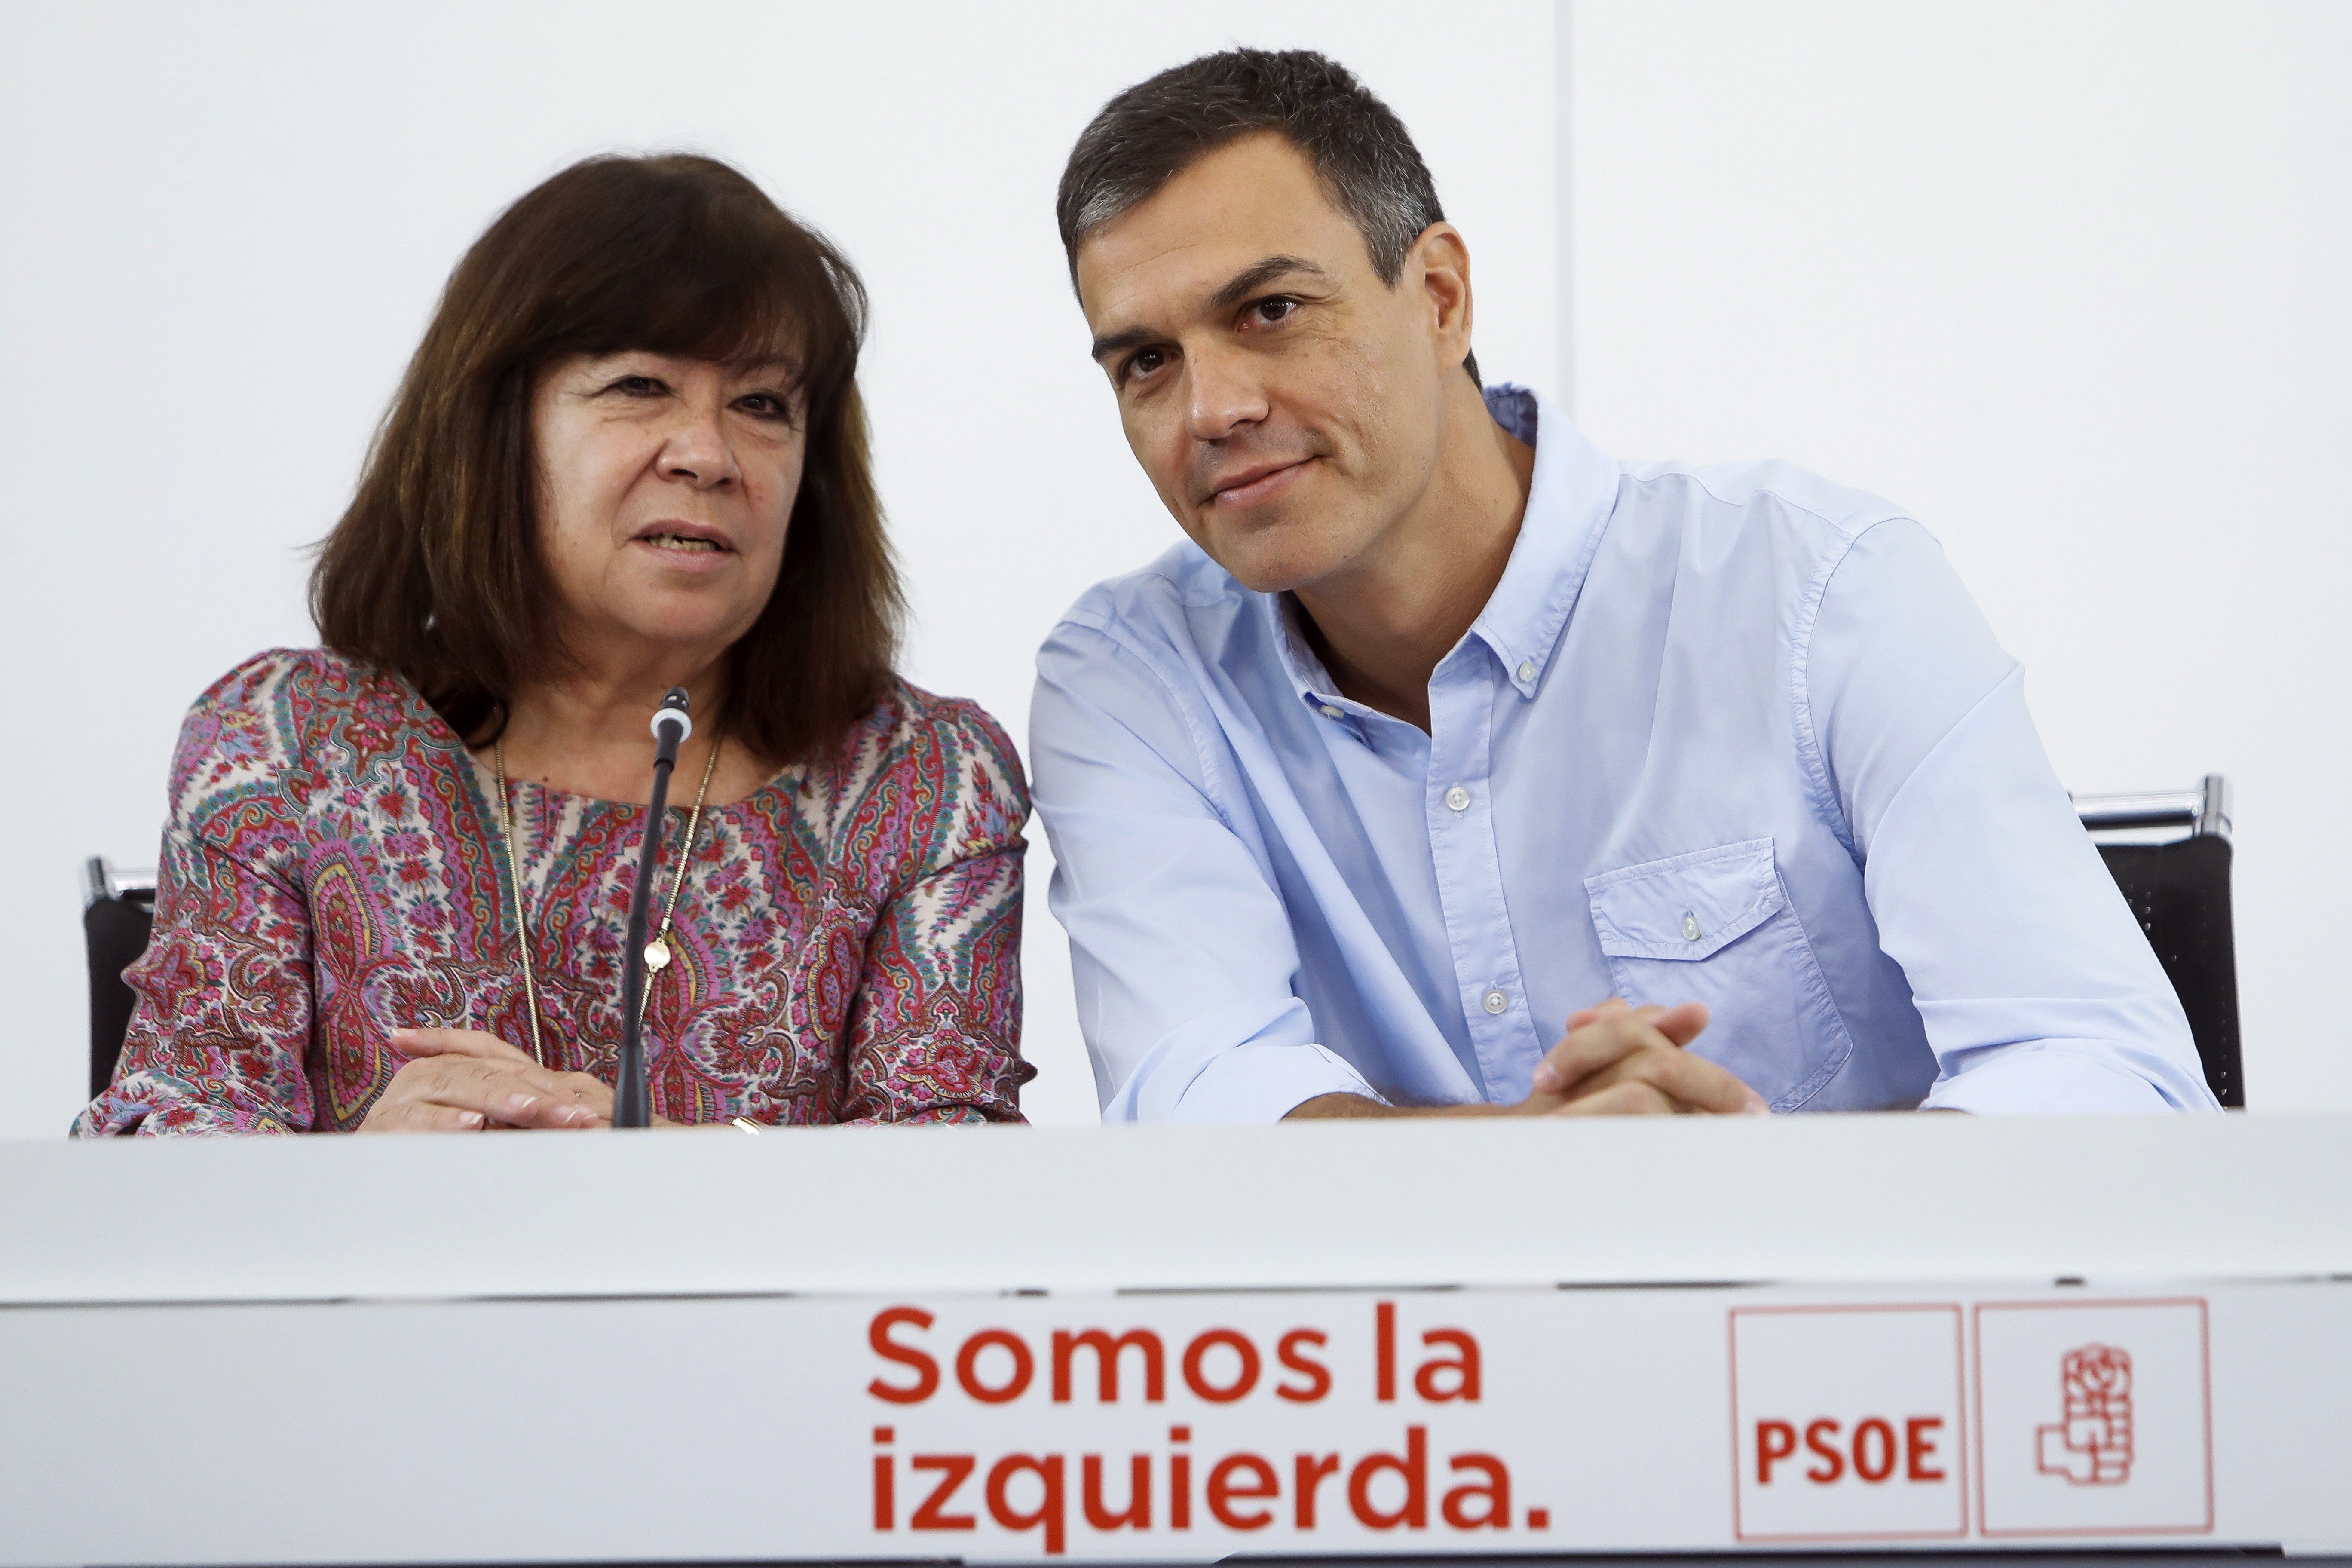 Sánchez colla Rajoy amb una comissió pel conflicte territorial